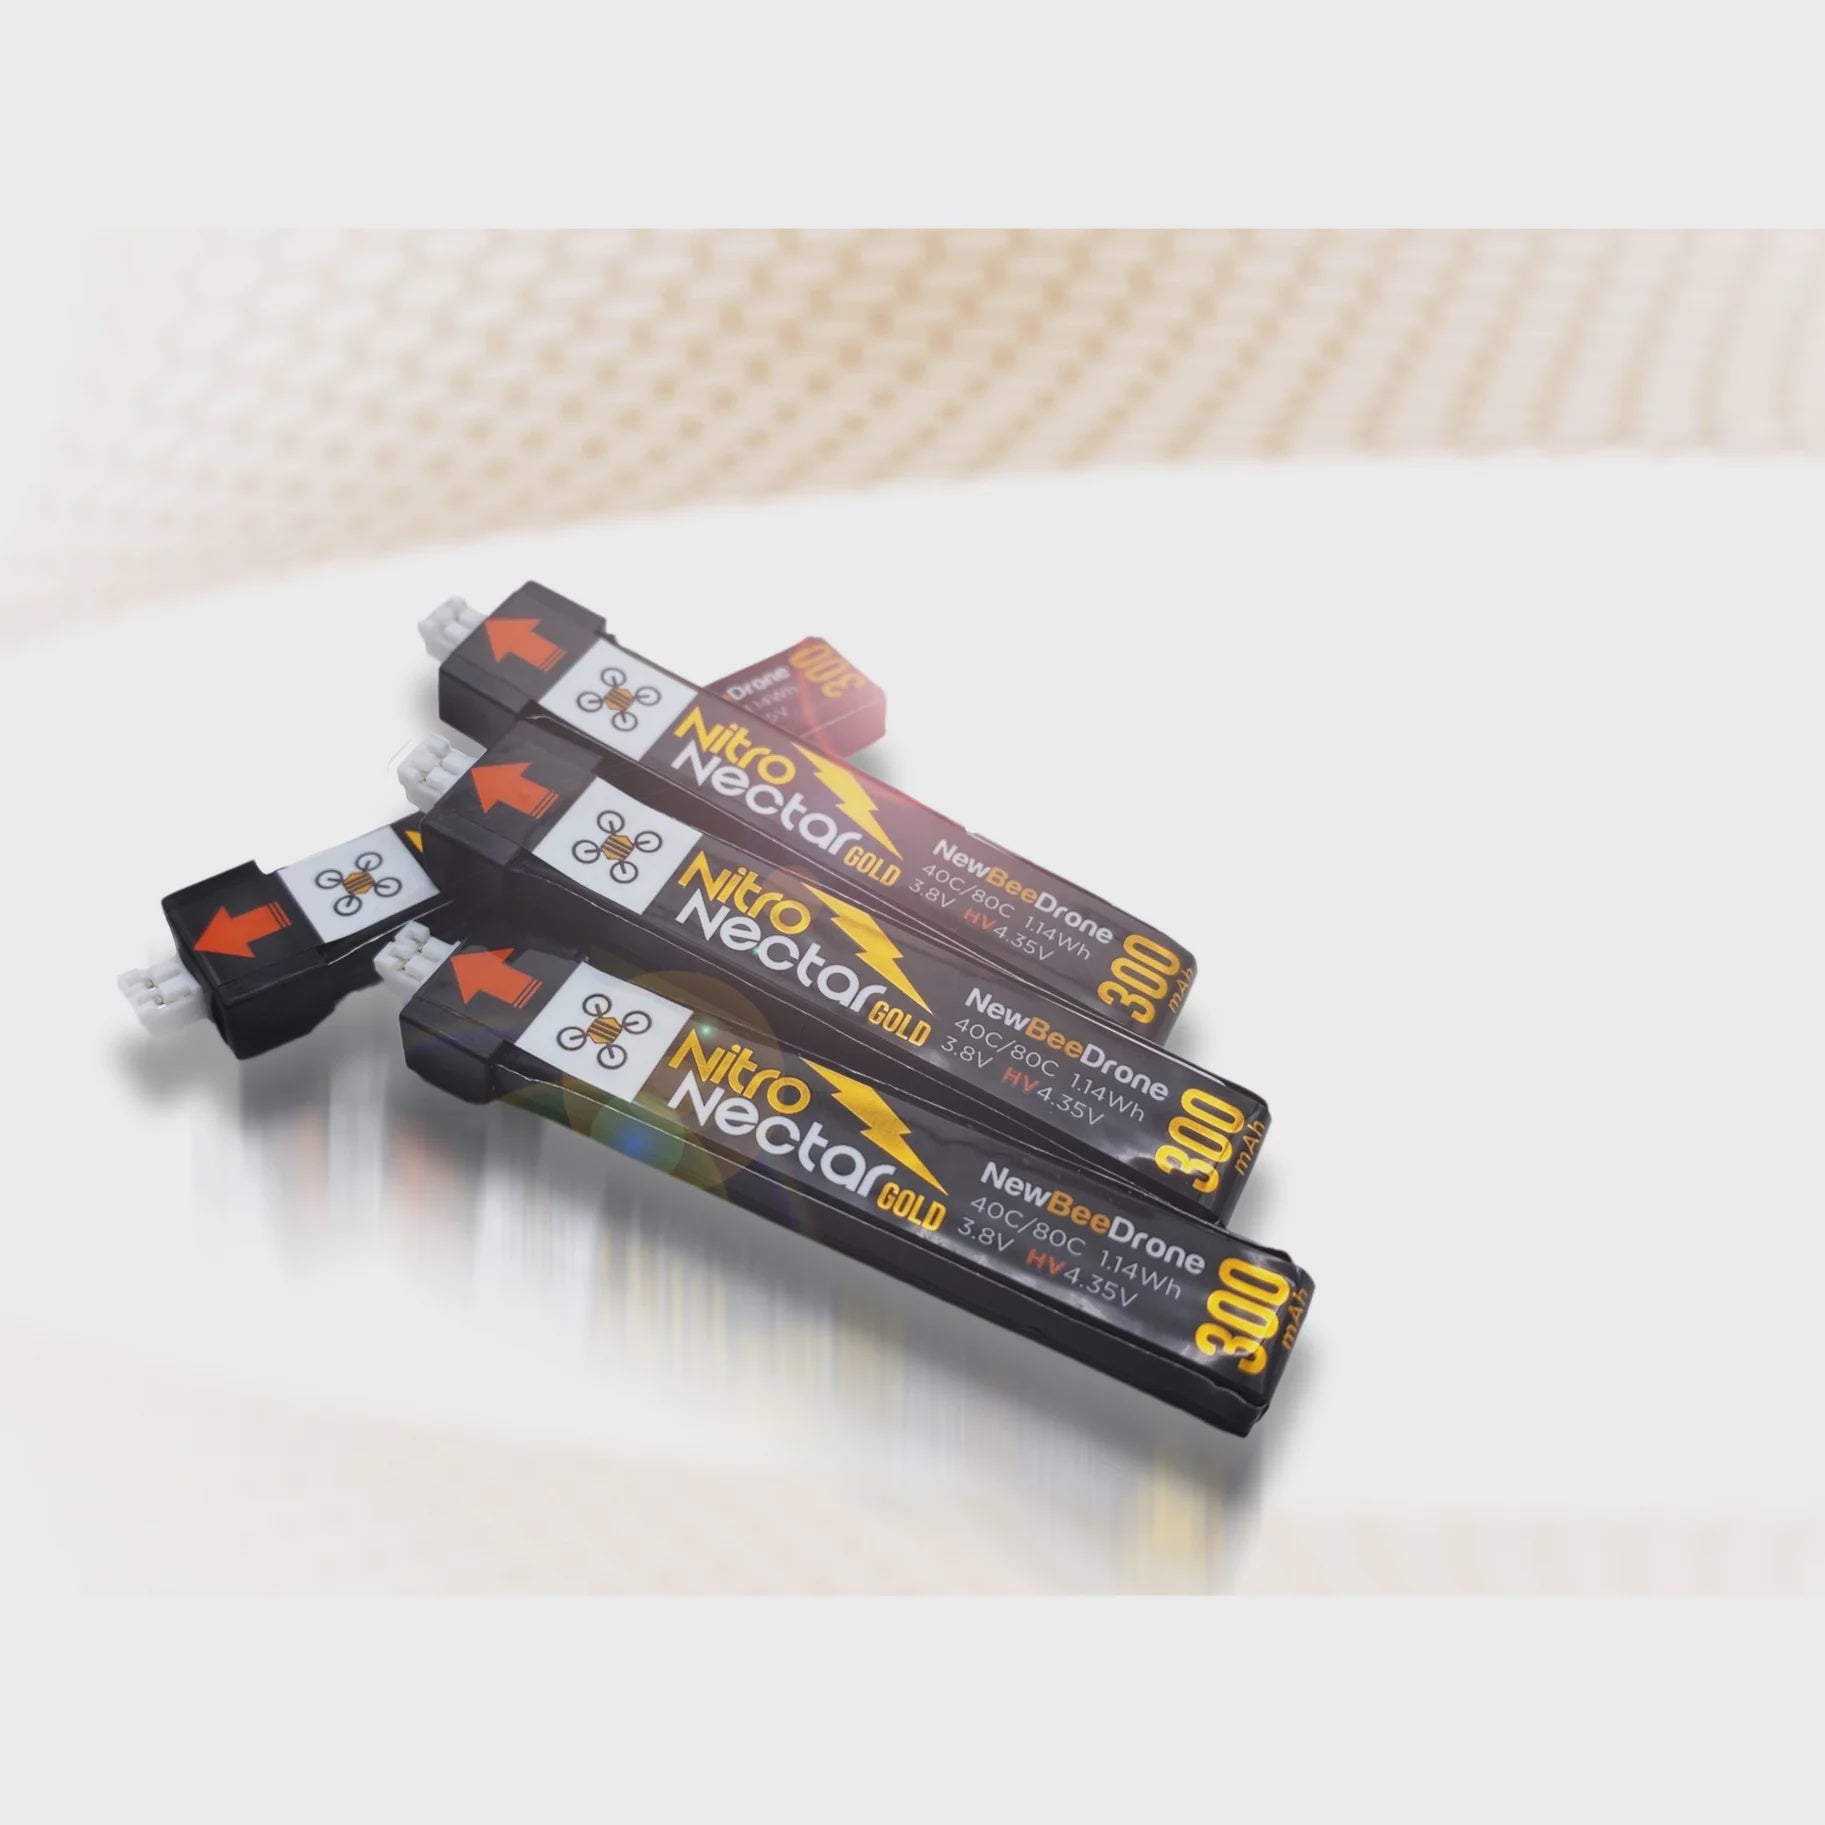 NewBeeDrone Nitro Nectar Gold 300mAh 1S HV PH2 LiPo Battery (4 Pack) [DG]